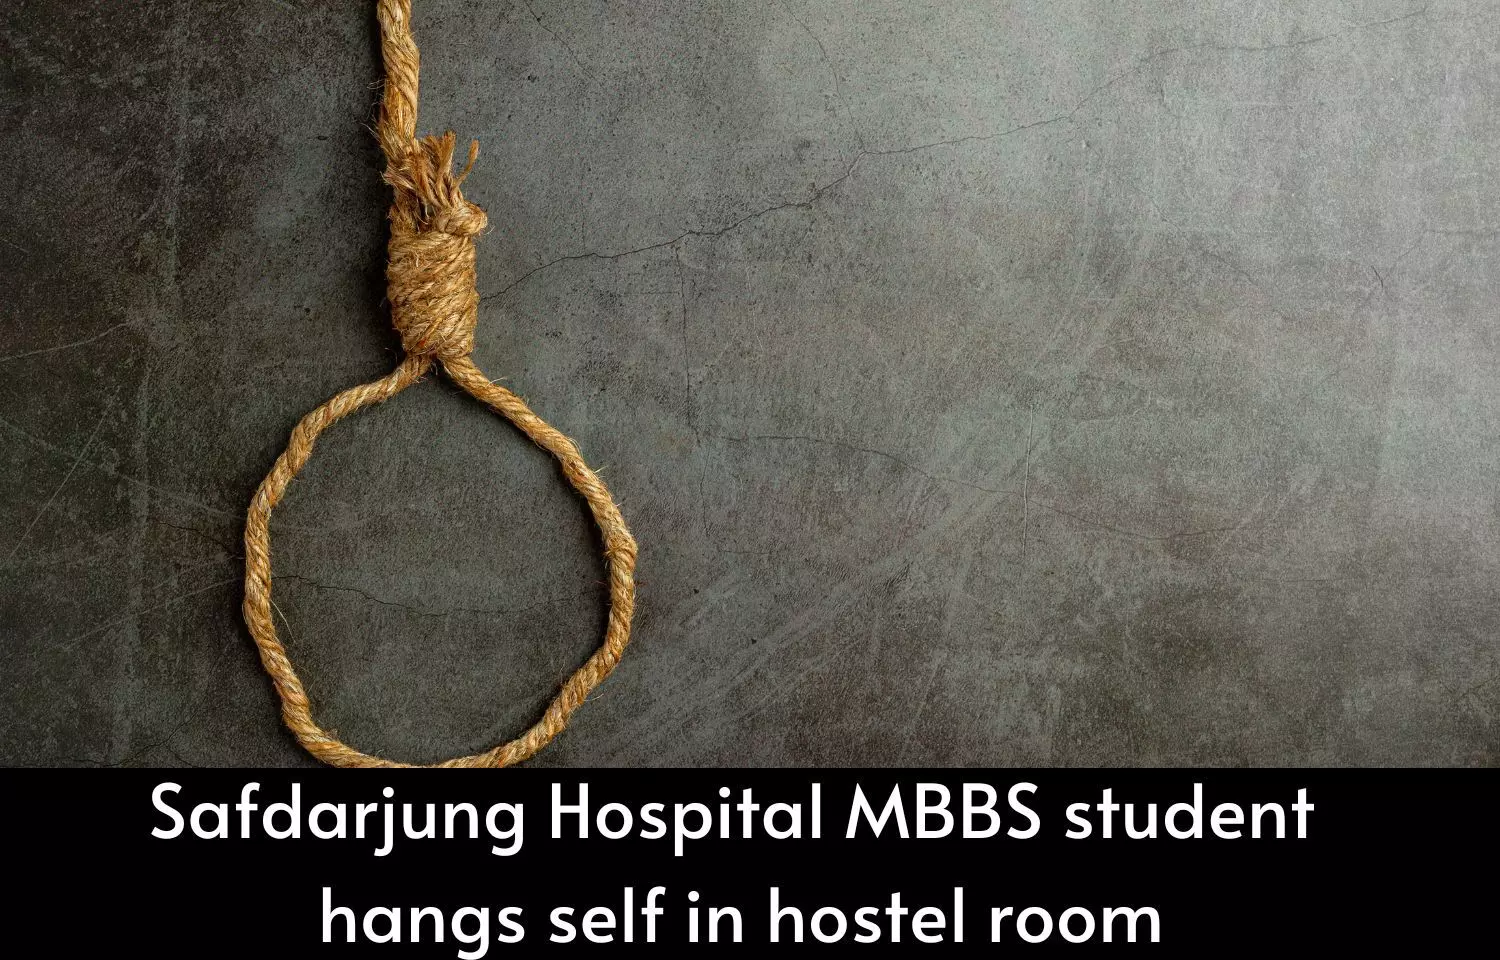 Safdarjung Hospital MBBS student hangs self in hostel room